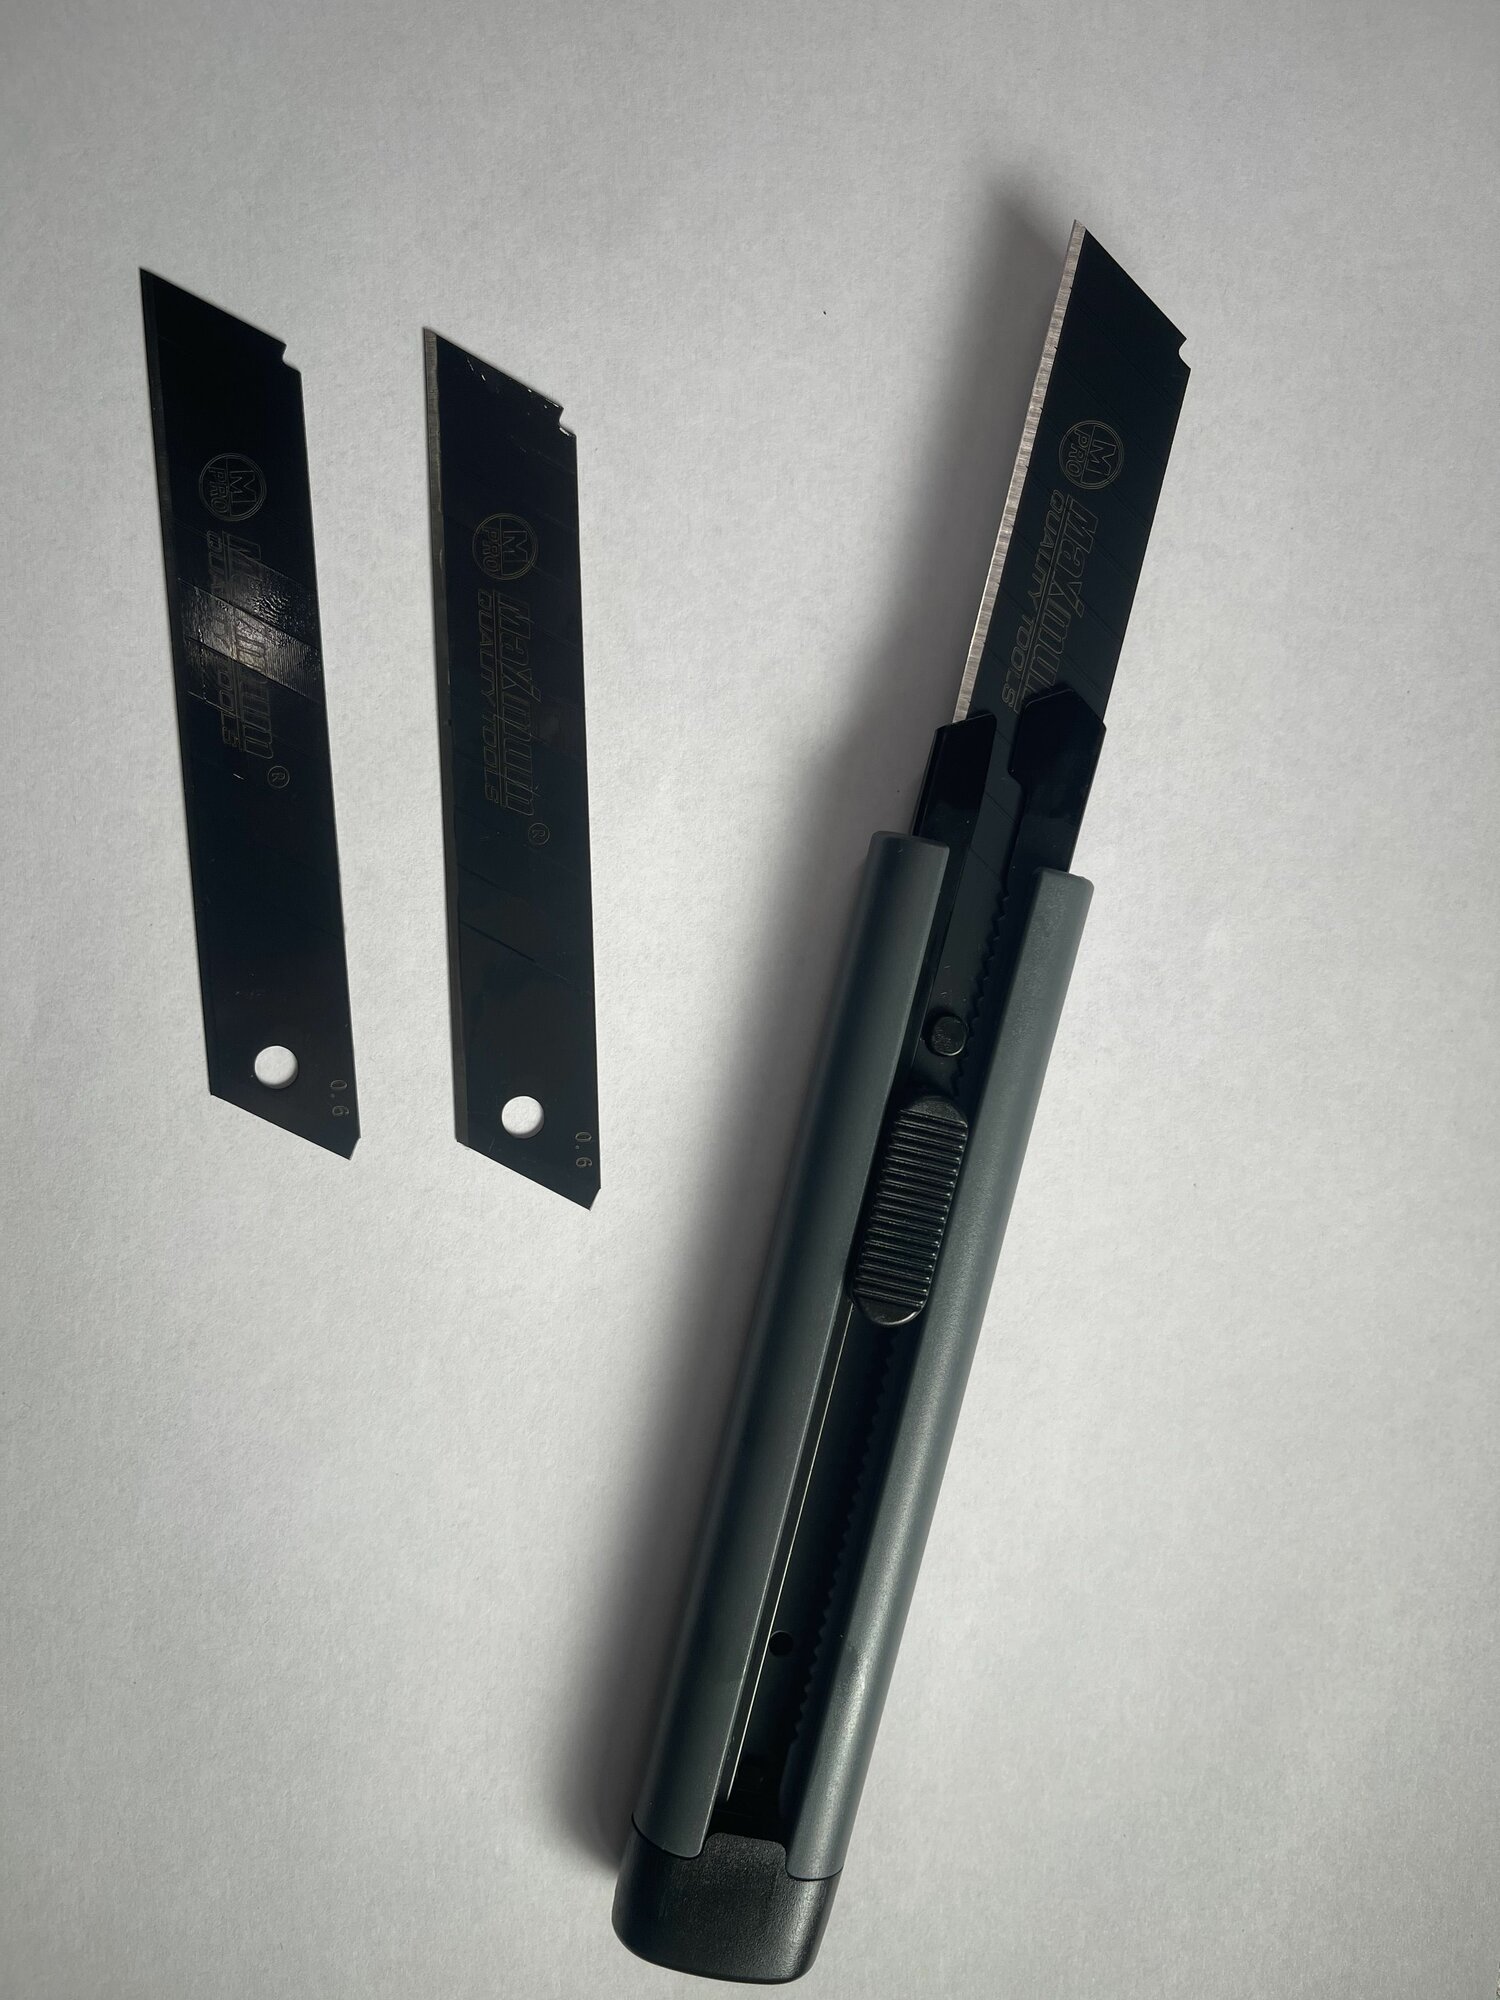 Нож канцелярский строительный усиленный 18 мм+2 лезвия 0.6 мм с фиксатором  "MAXIMUM" MX 13278 темно-серый цвет